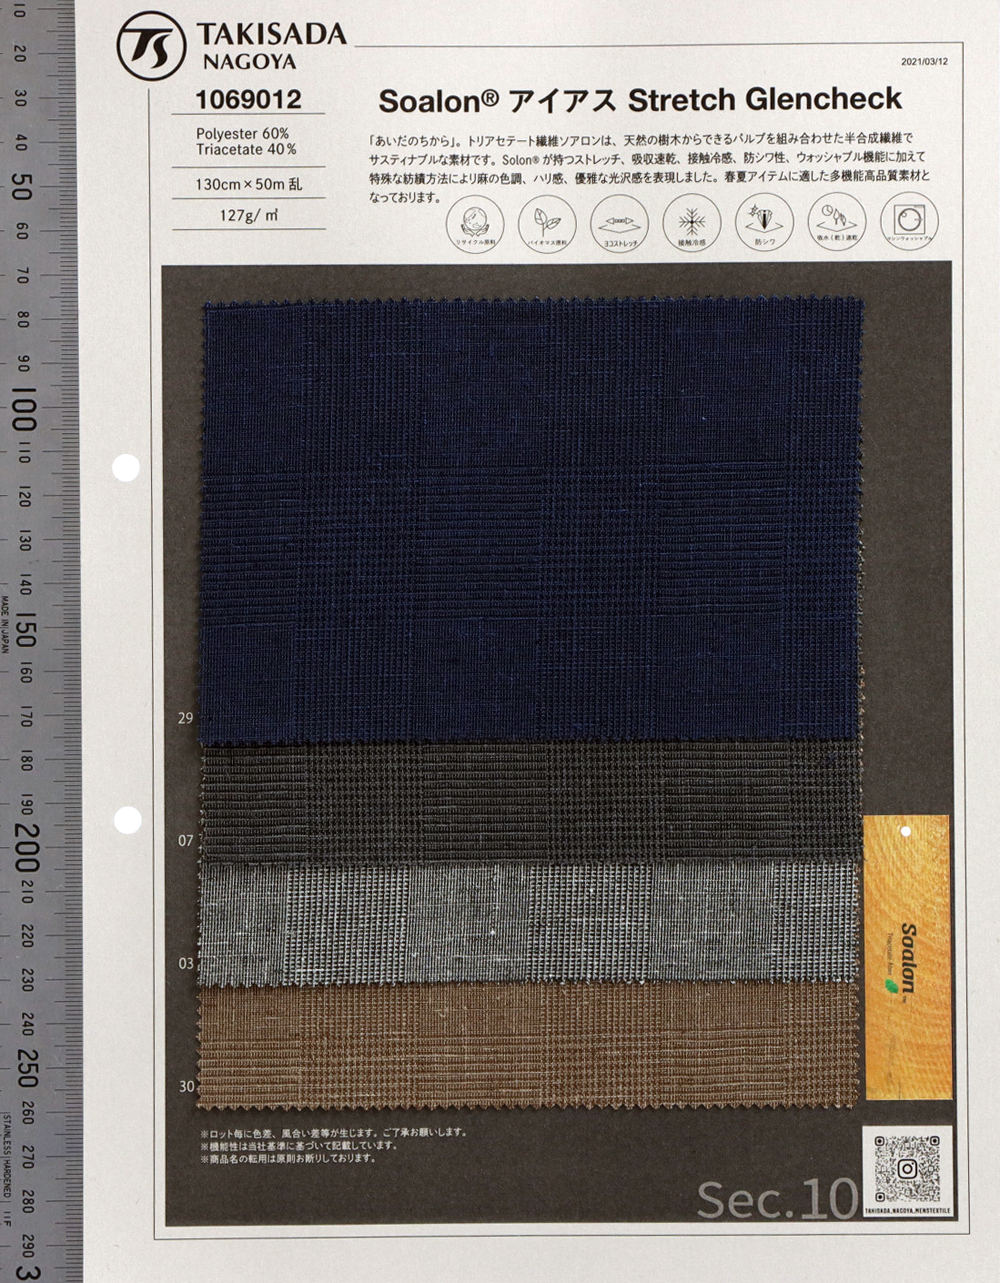 1069012 Solon Triacetat Glen Check Stretch[Textilgewebe] Takisada Nagoya